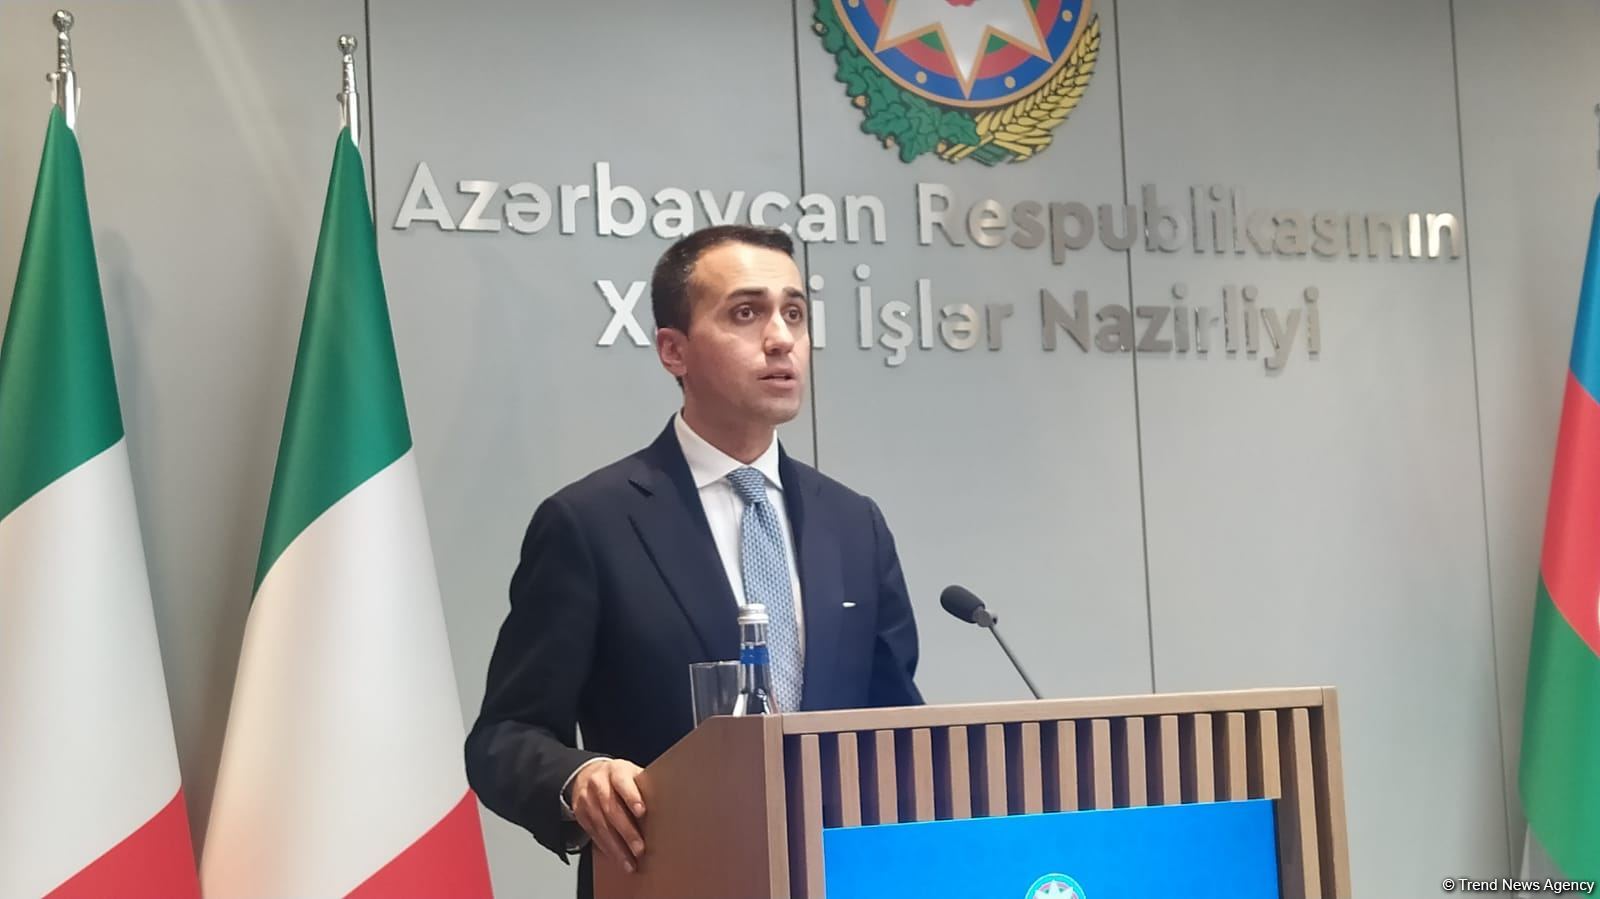 Азербайджан является одним из основных партнеров Италии - Луиджи Ди Майо